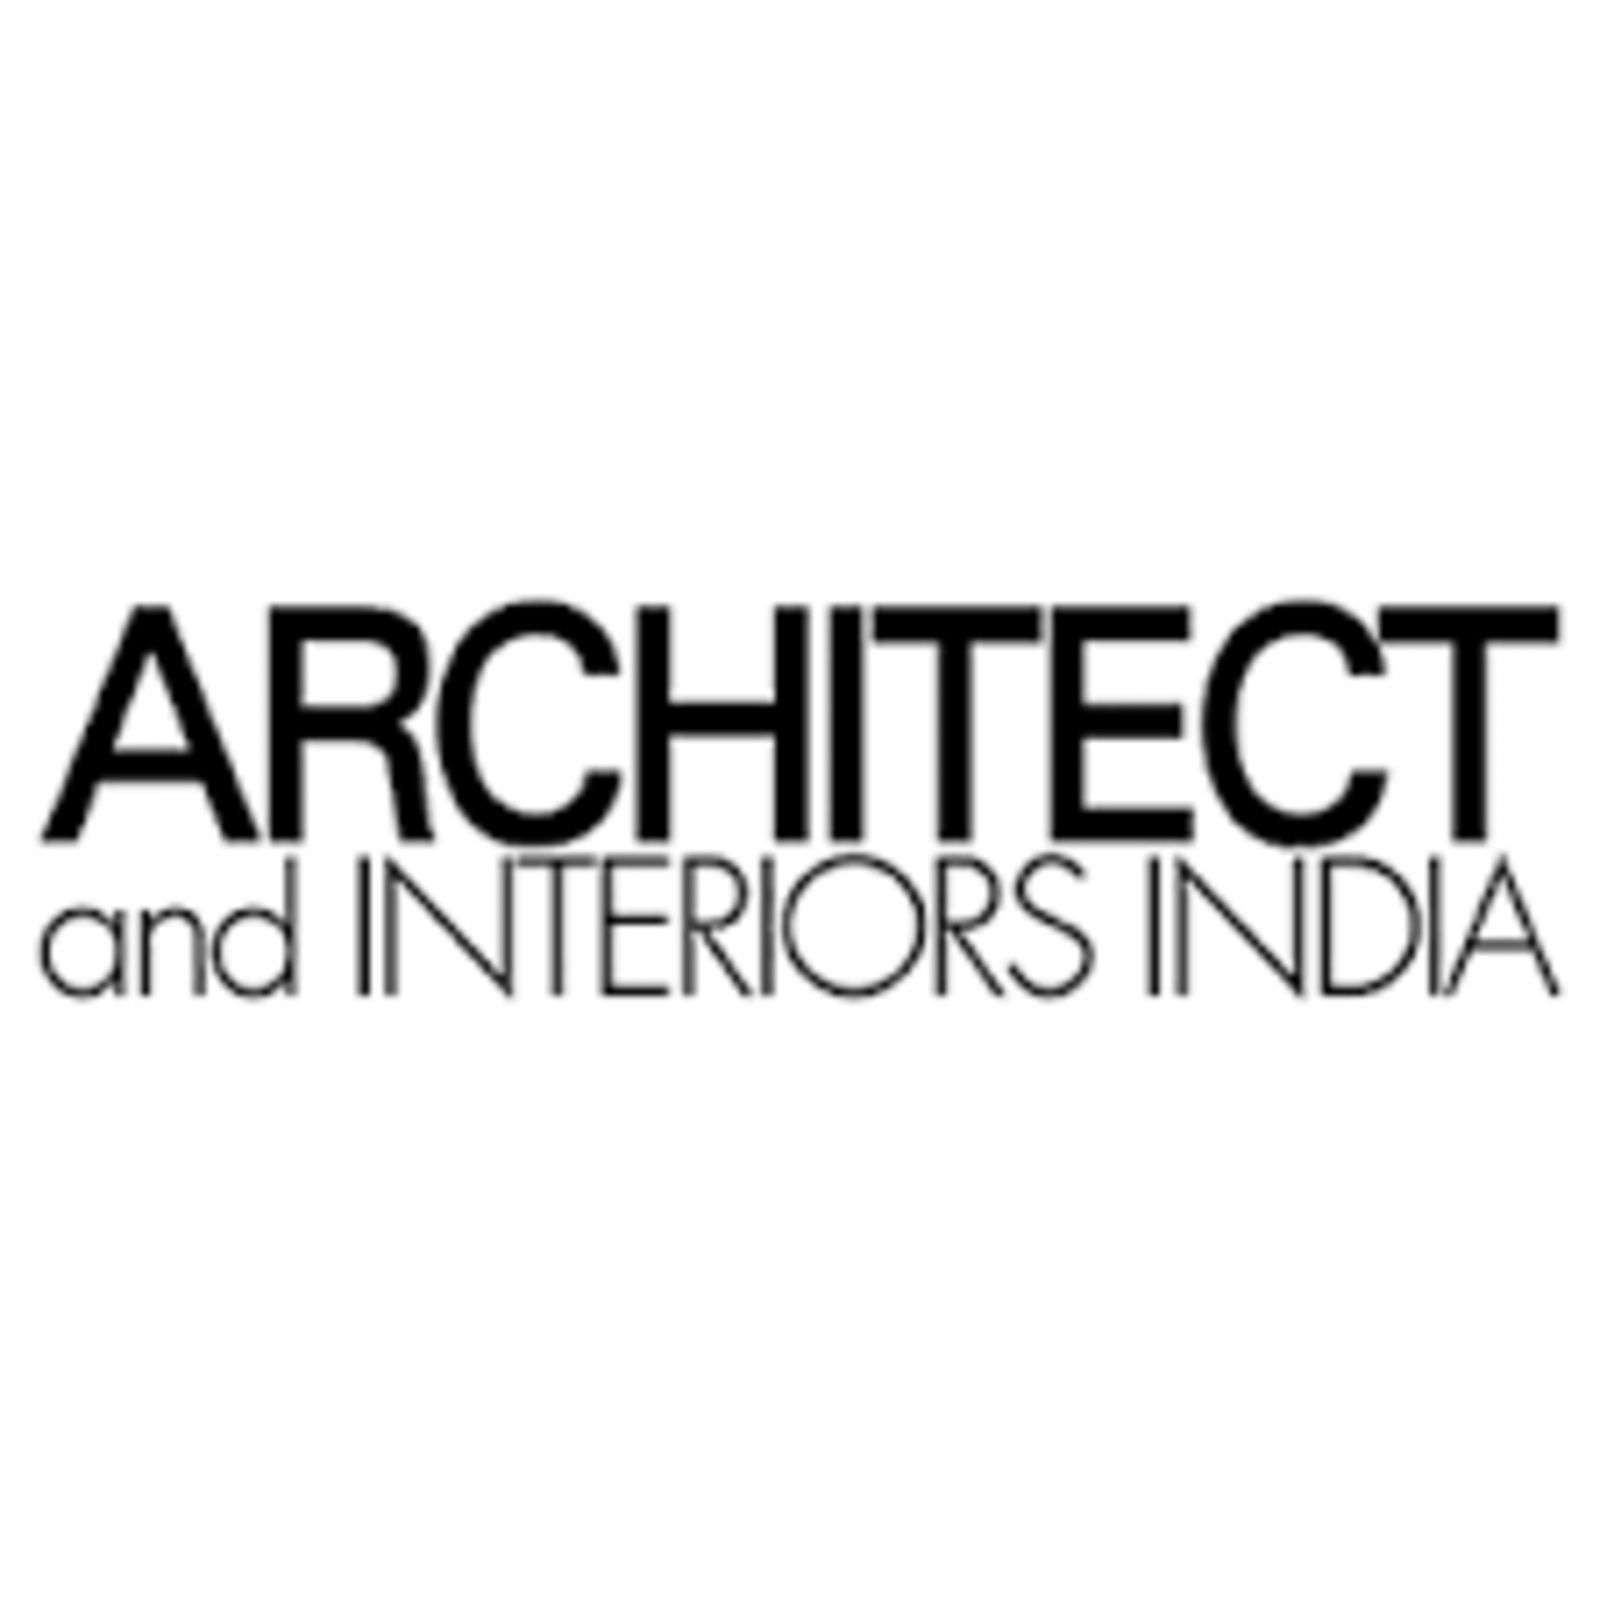 Arcihtect and interiors India